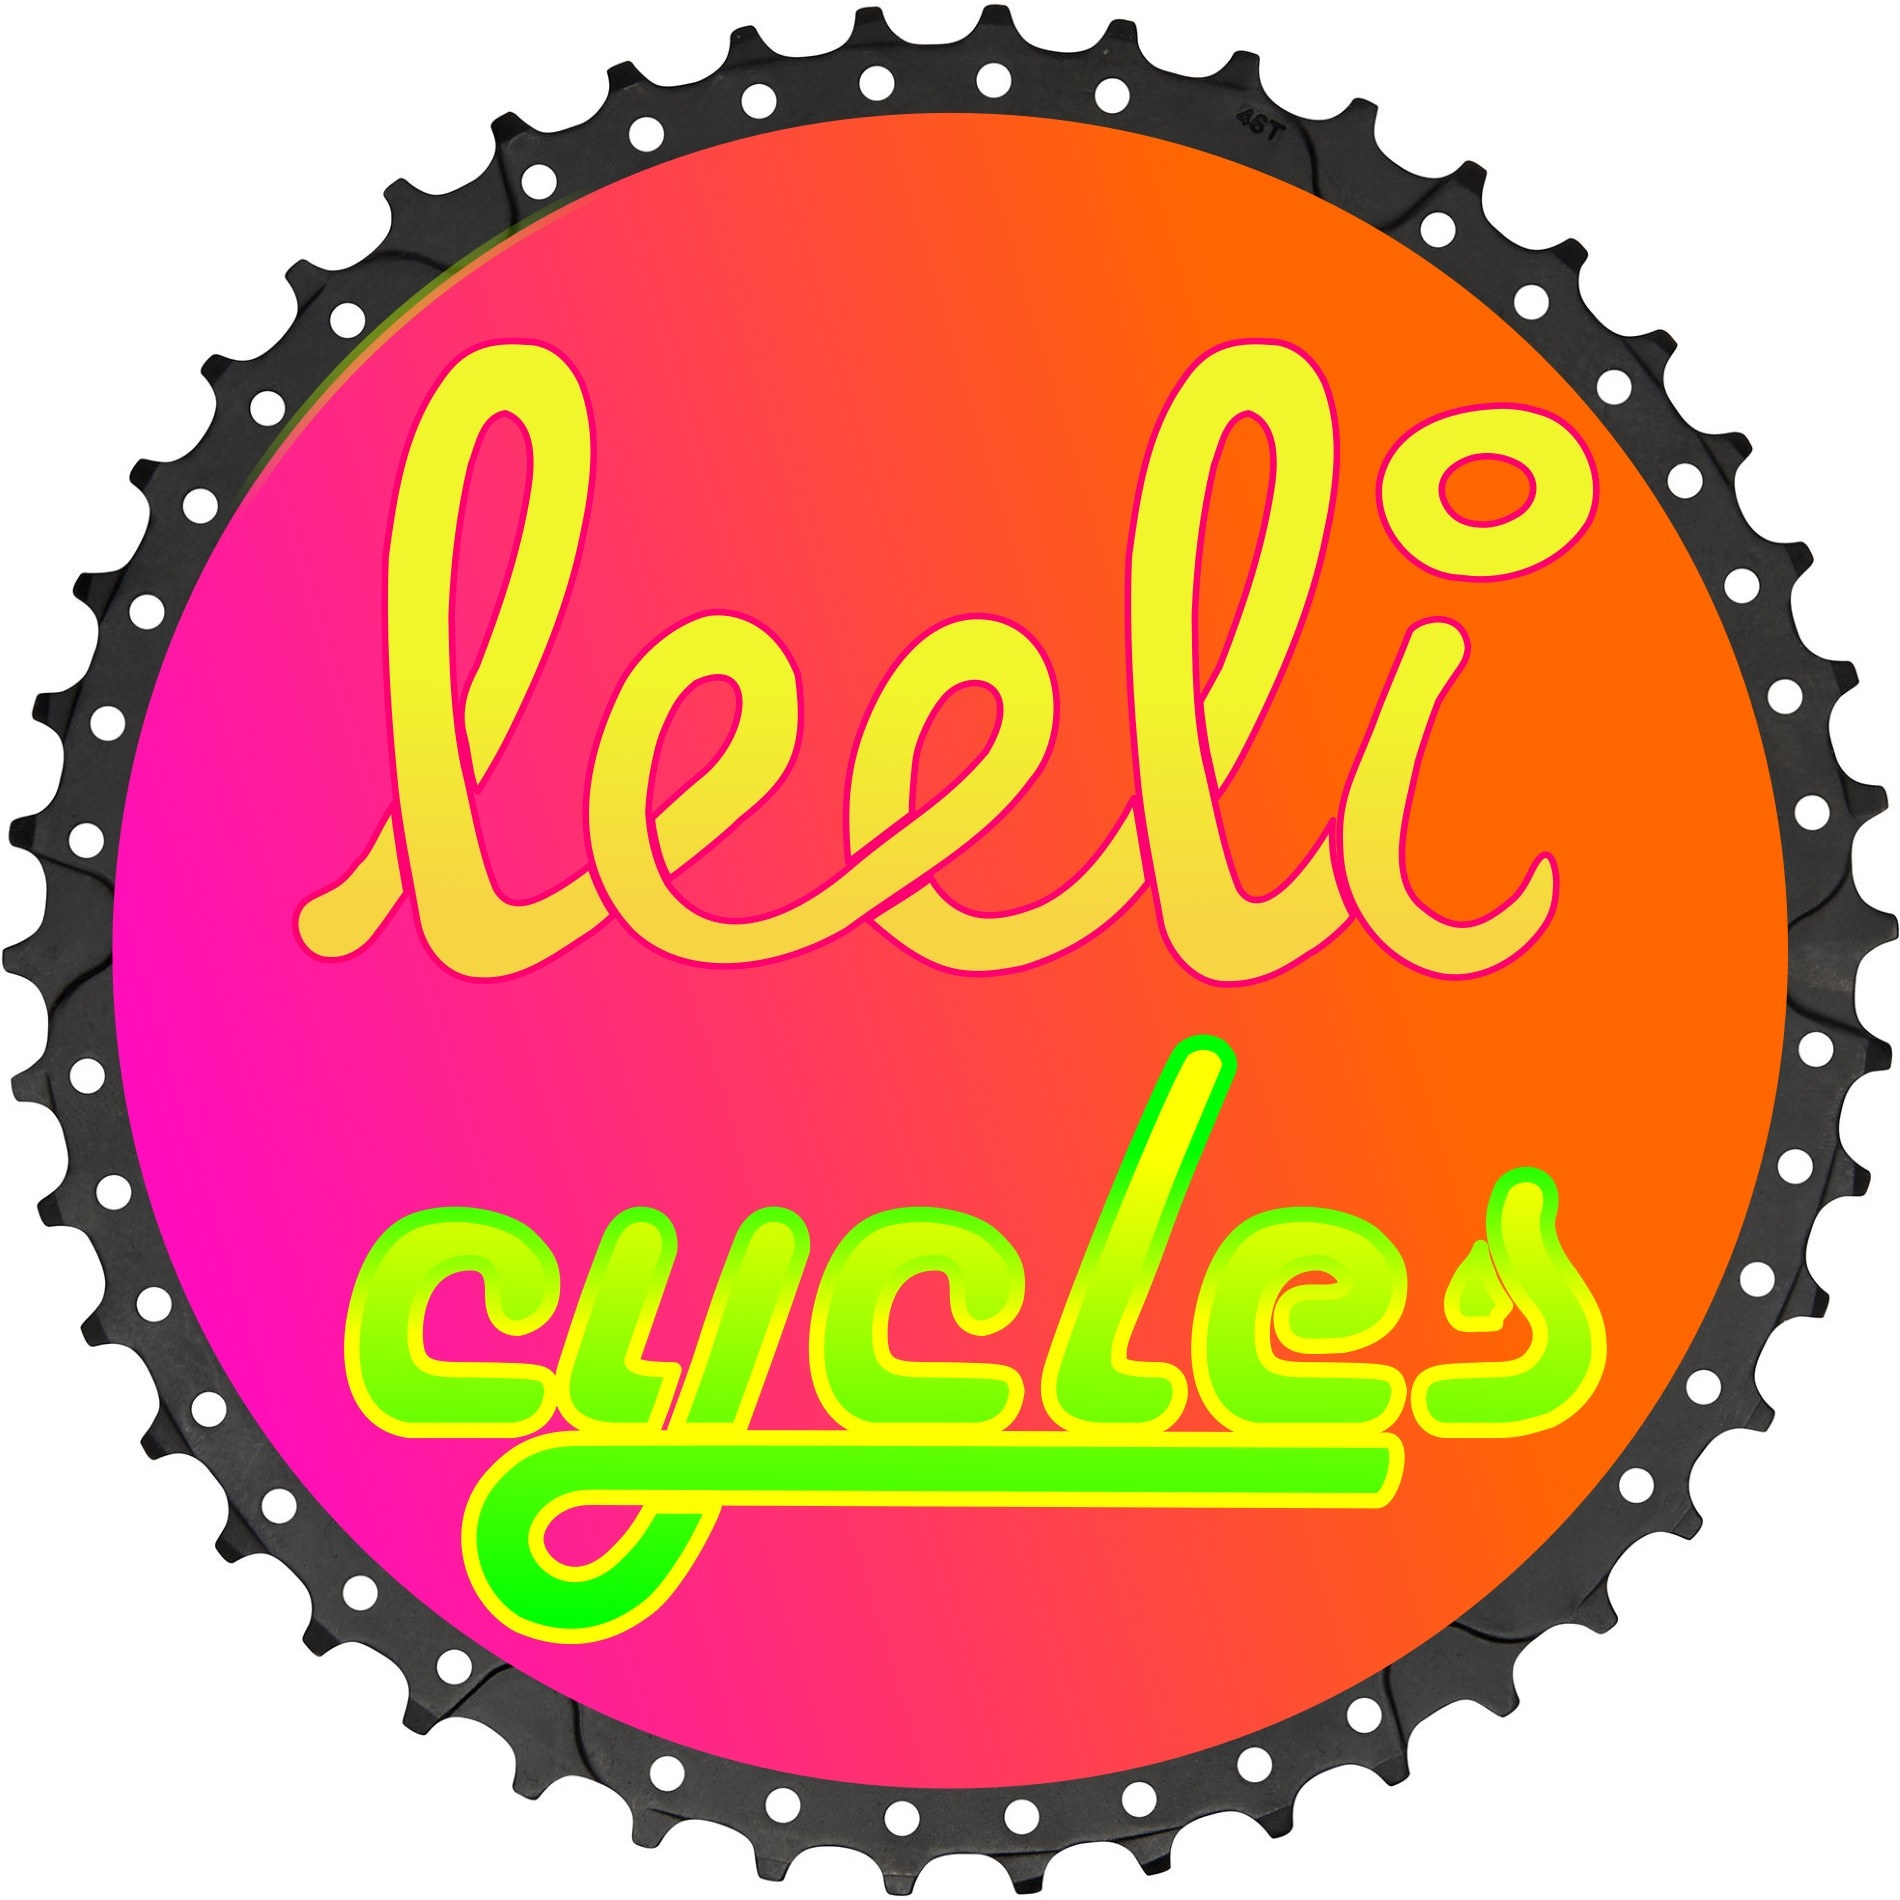 LEELI CYCLES